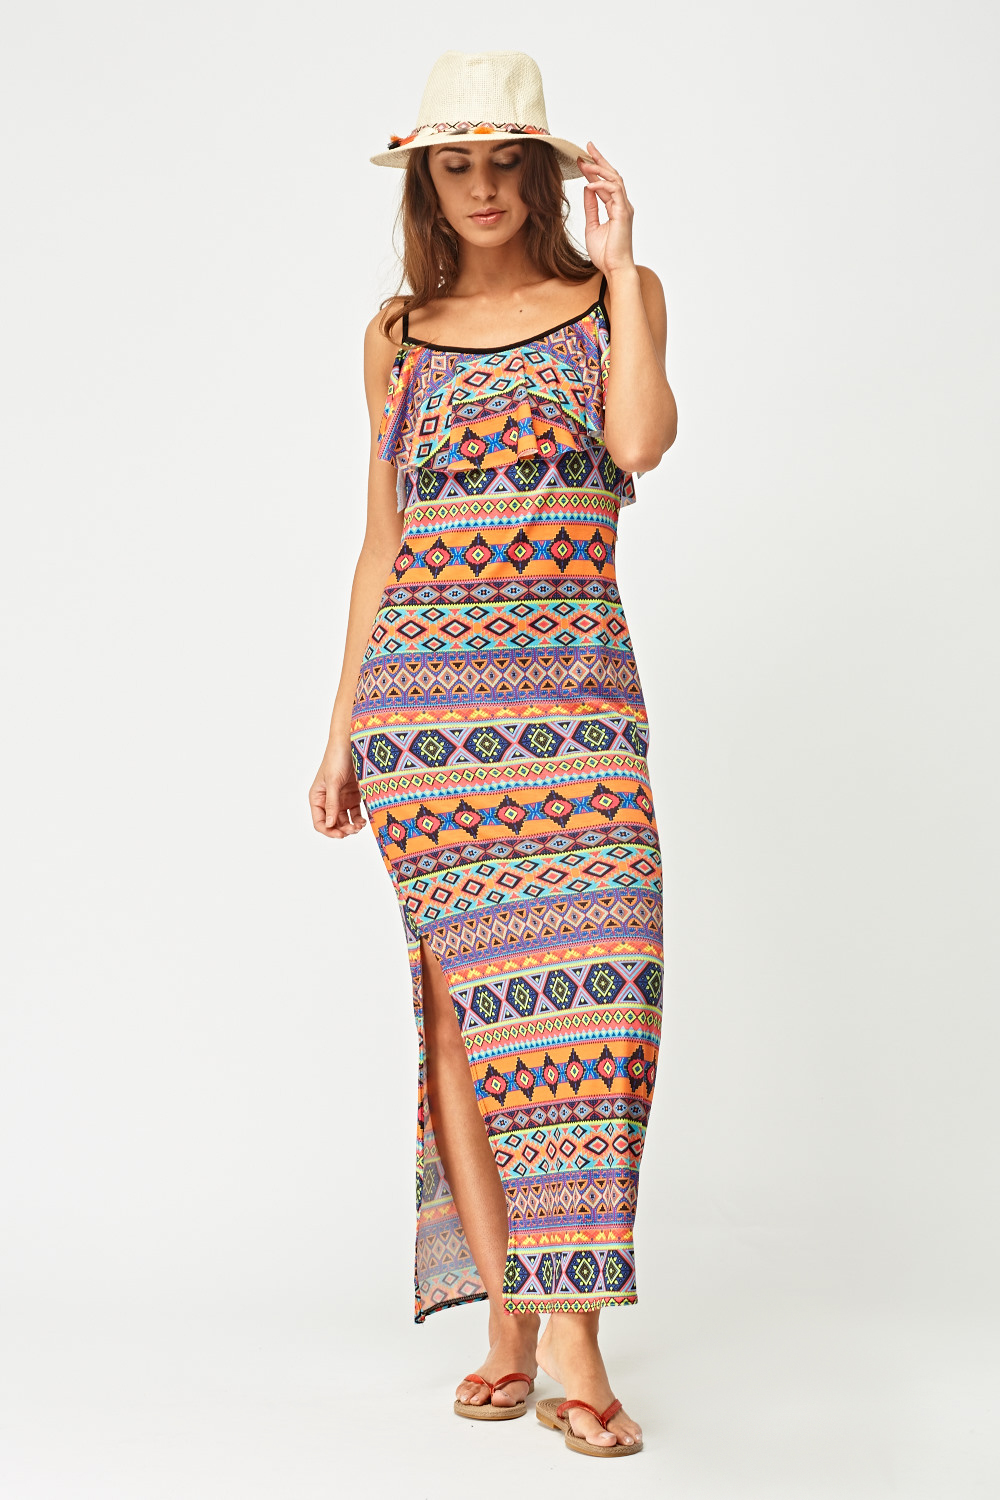 Aztec Print Maxi Dress - Just $6